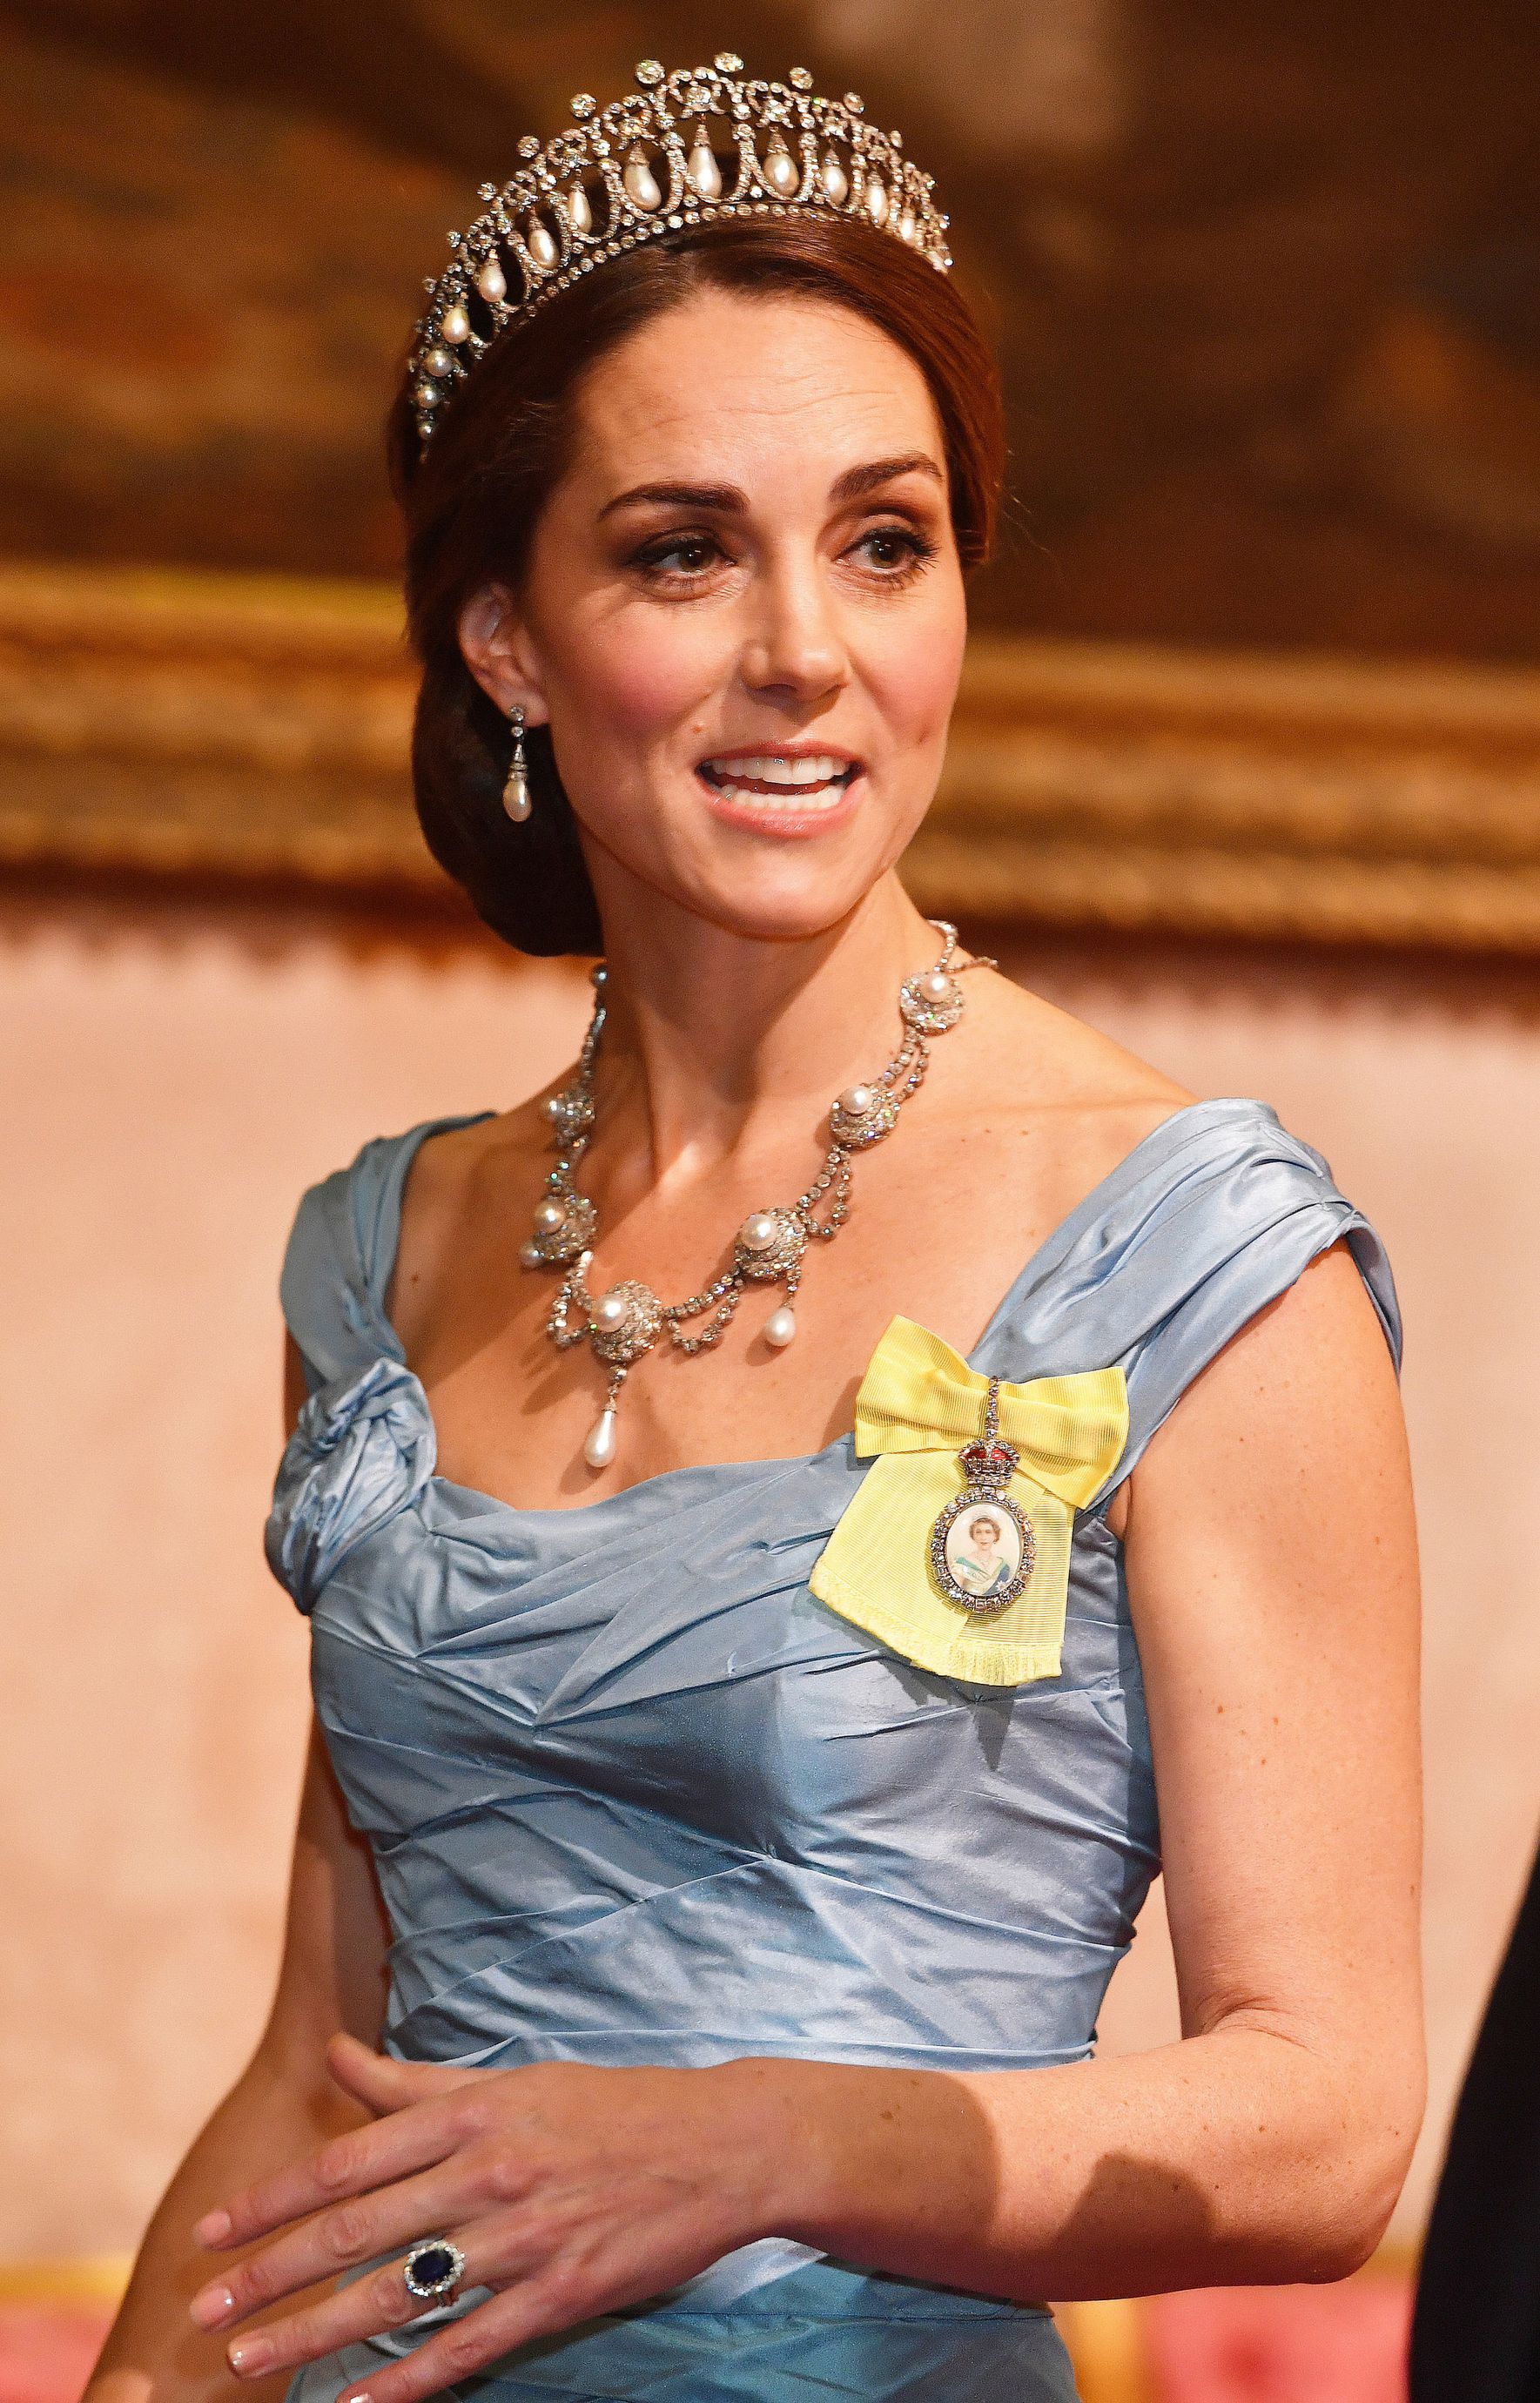 Кейт Миддлтон стала «королевой приема» на банкете в честь приезда короля Нидерландов